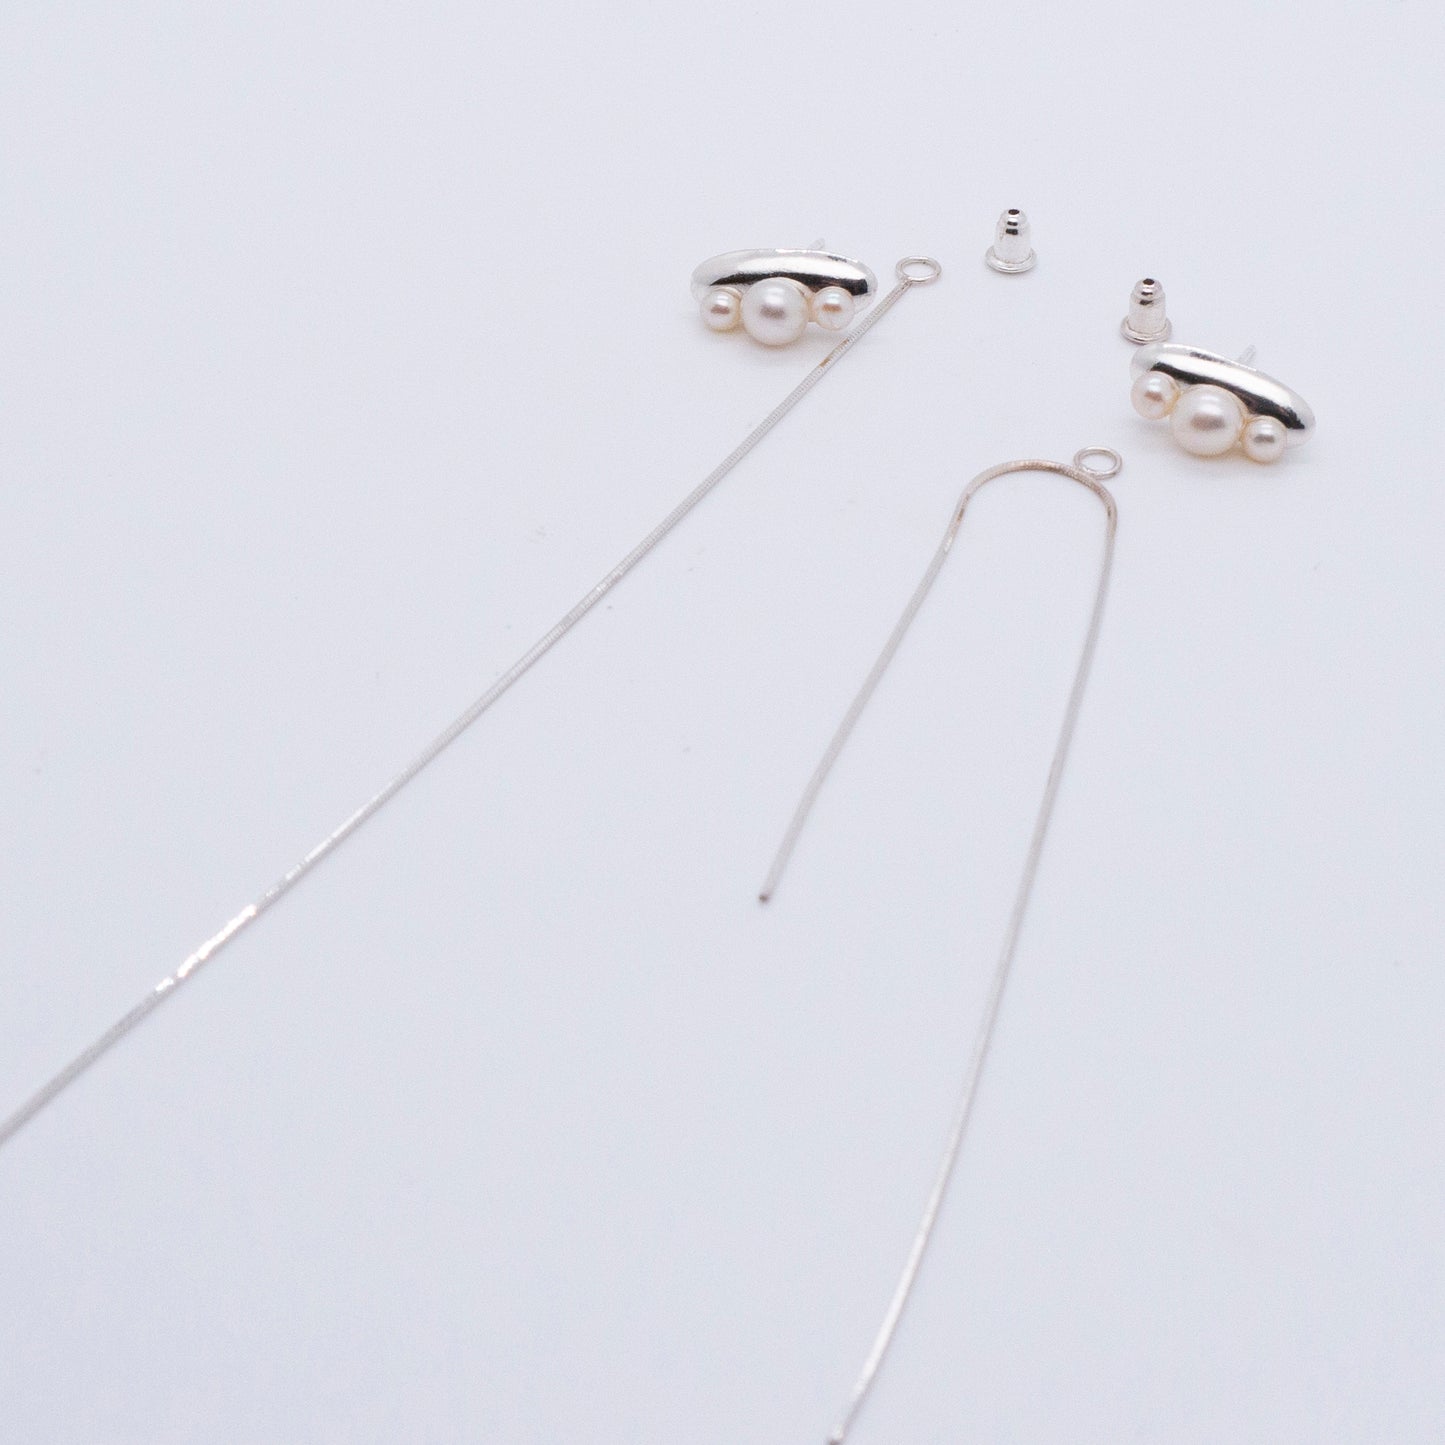 Multiverse - Time Travel Baby Pearl Earrings + Asymmetric Thread Earring Backs (Silver) 